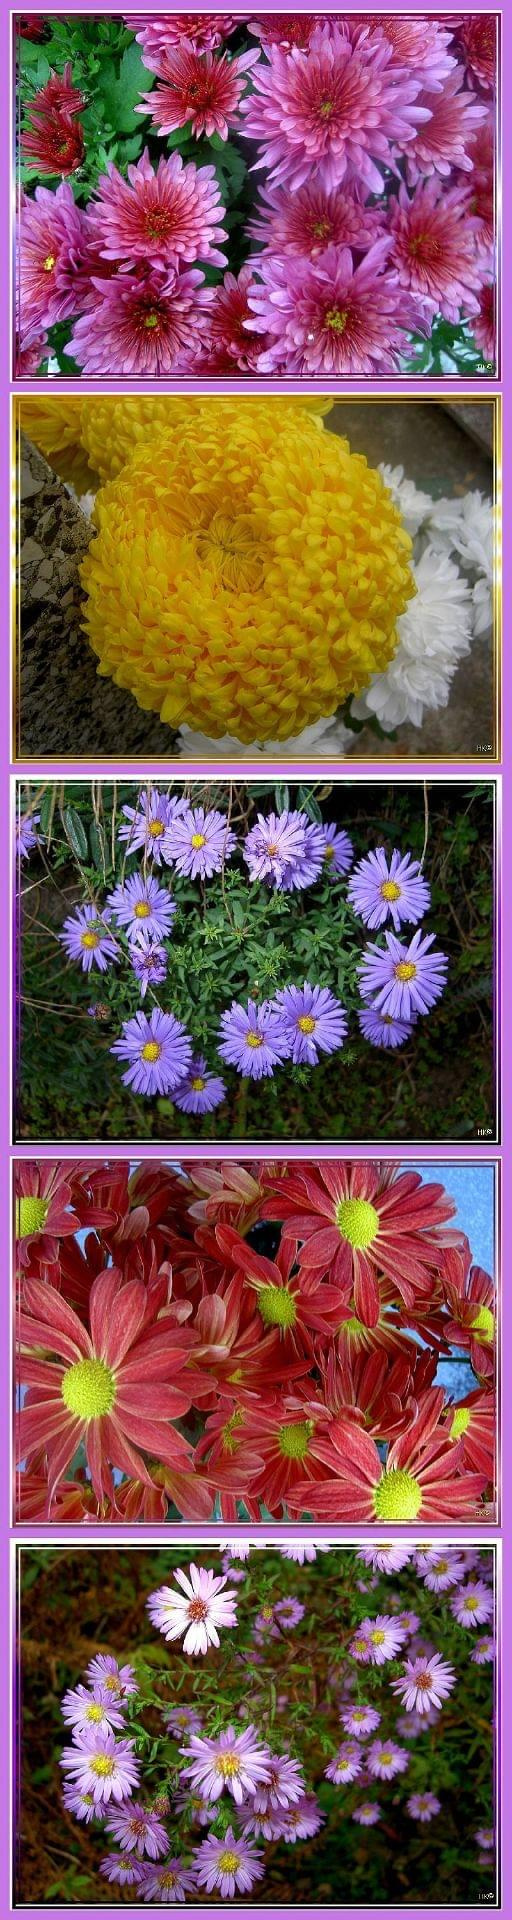 trochę jesieni w moim ogrodzie...nadal ogrom kwiatów! #jesień #collage #rośliny